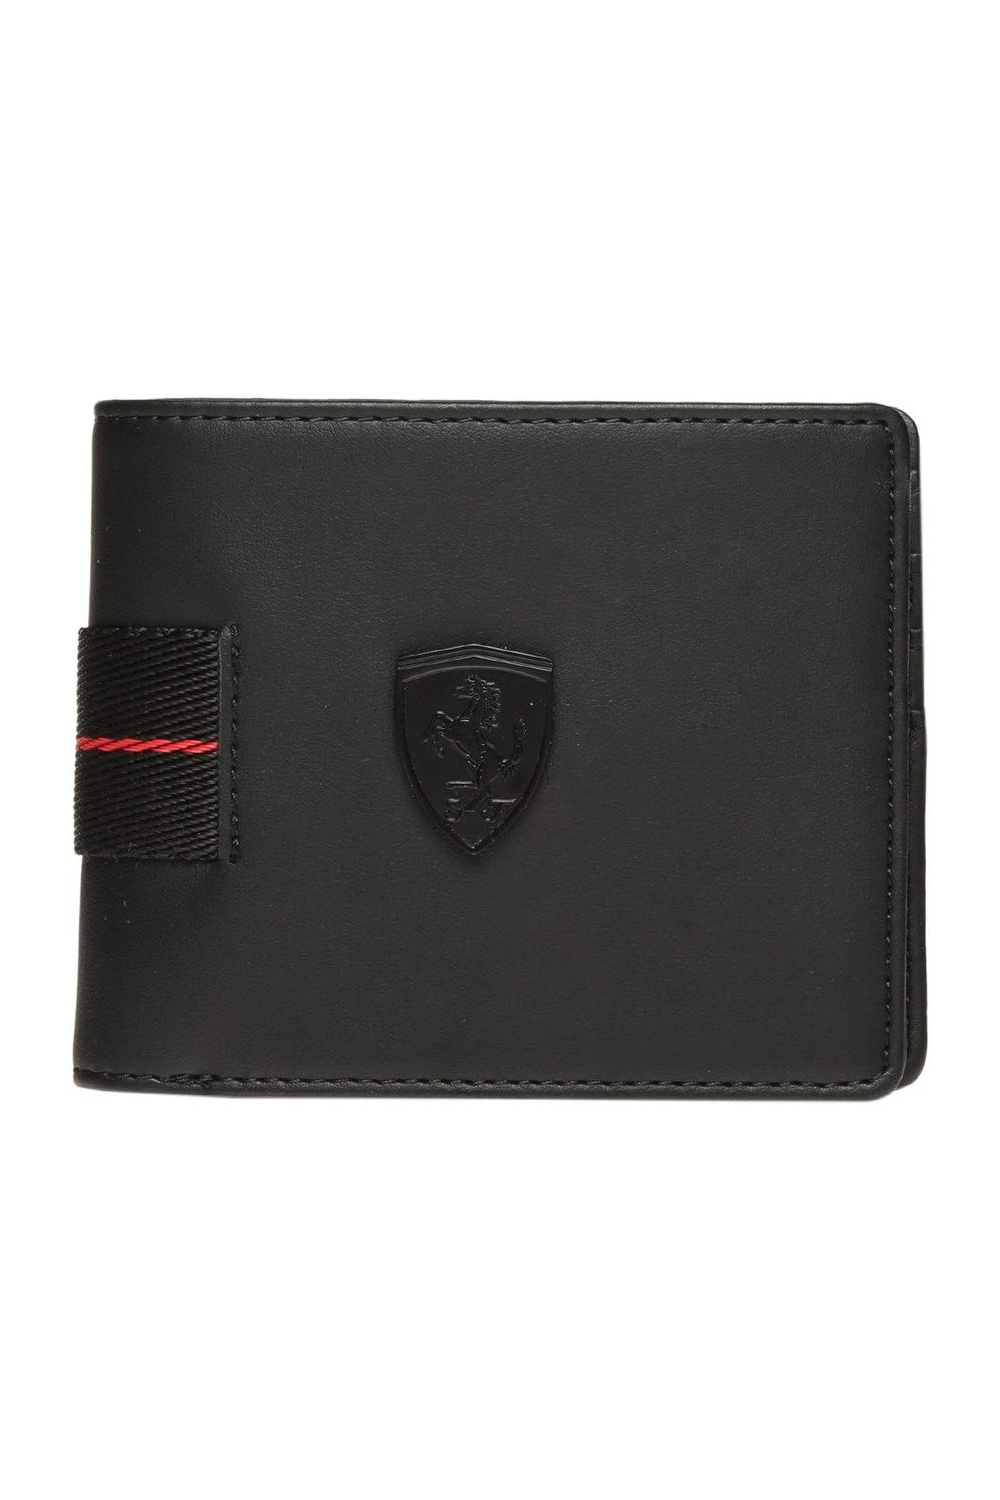 Puma Leather Black Men's Wallet | Odel.lk